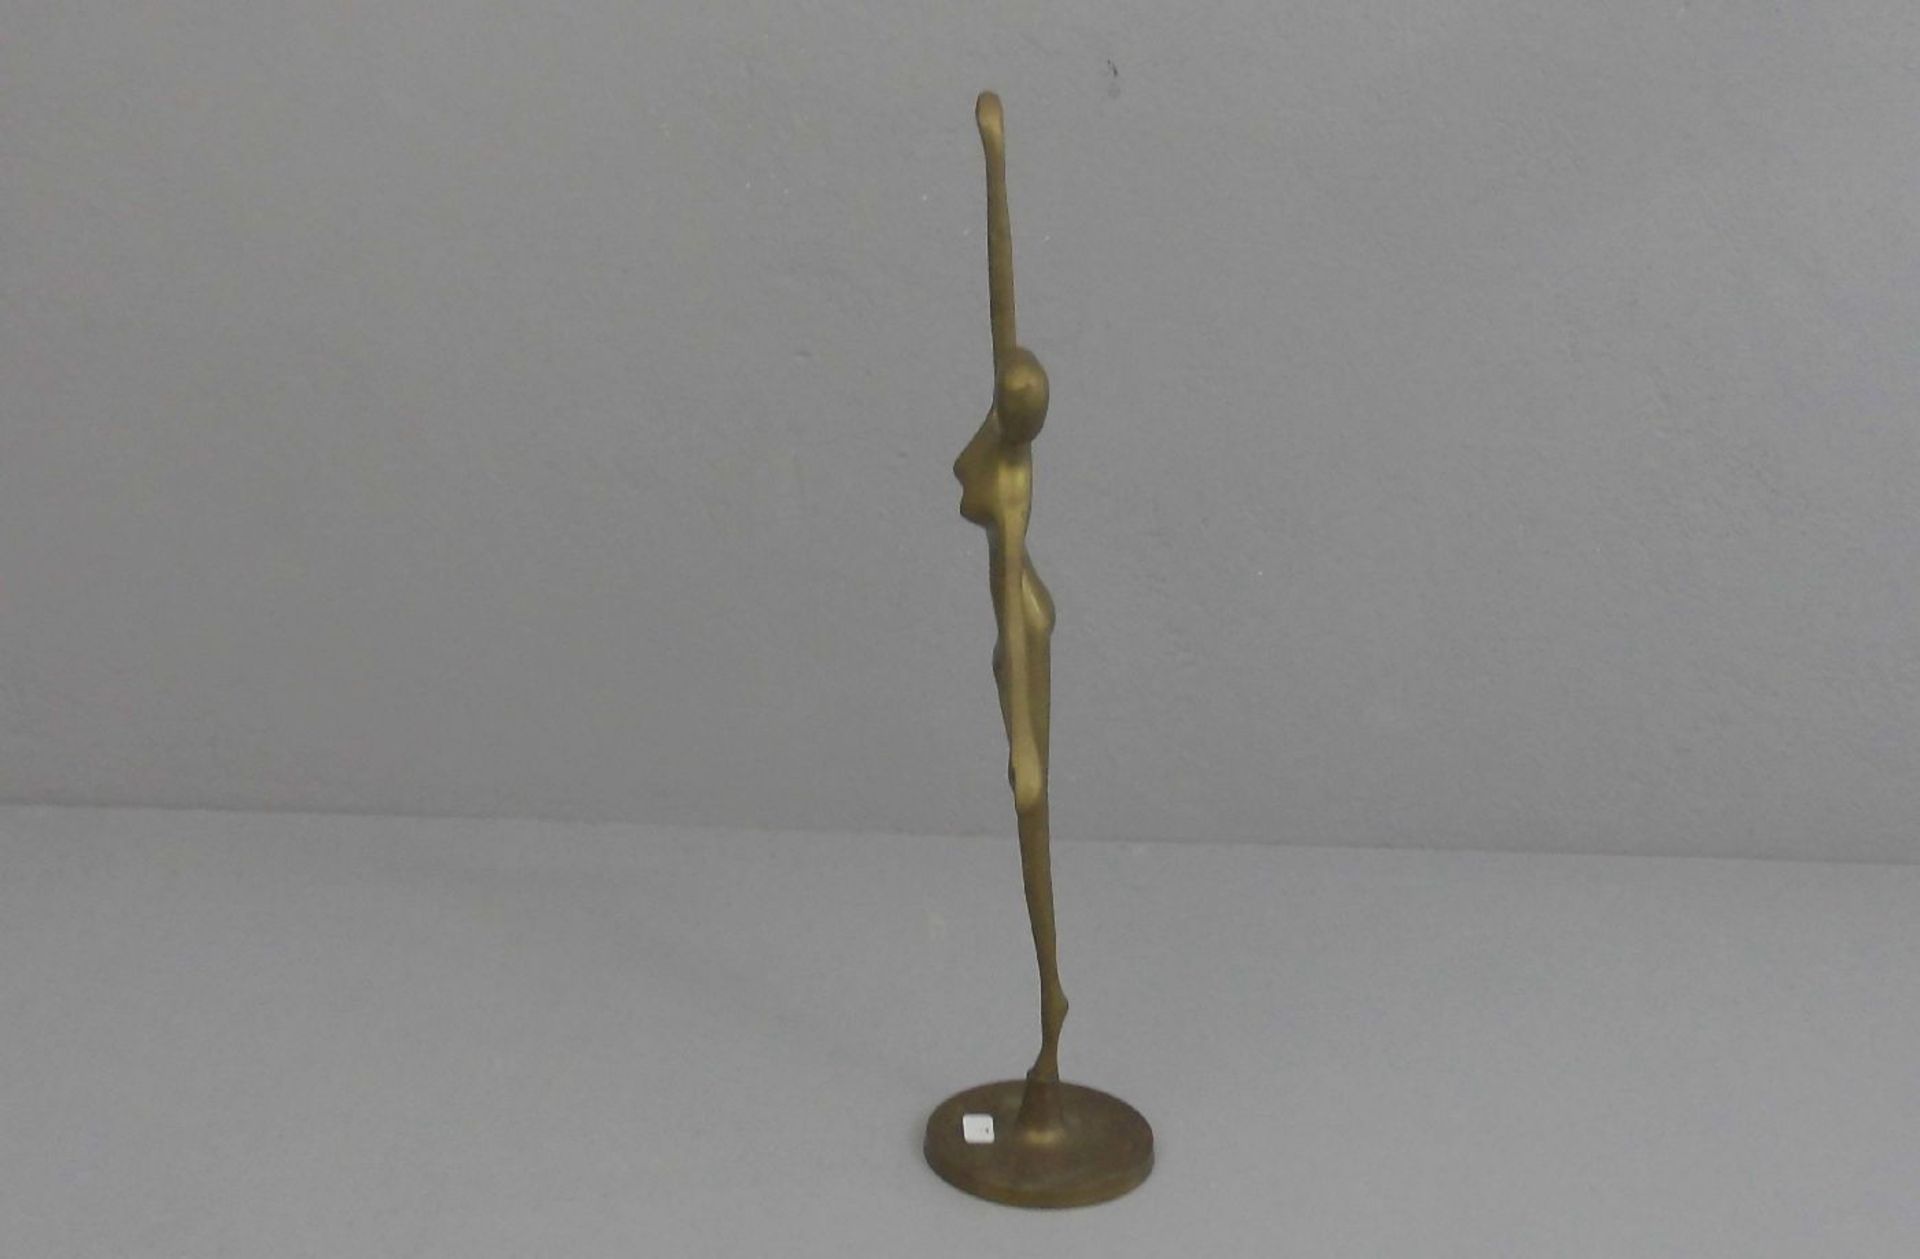 KHALIQUE, BODRUL (1978-2013), Skulptur / sculpture: "Tänzerin", Bronze - Gelbguss; unsigniert. In - Image 3 of 3